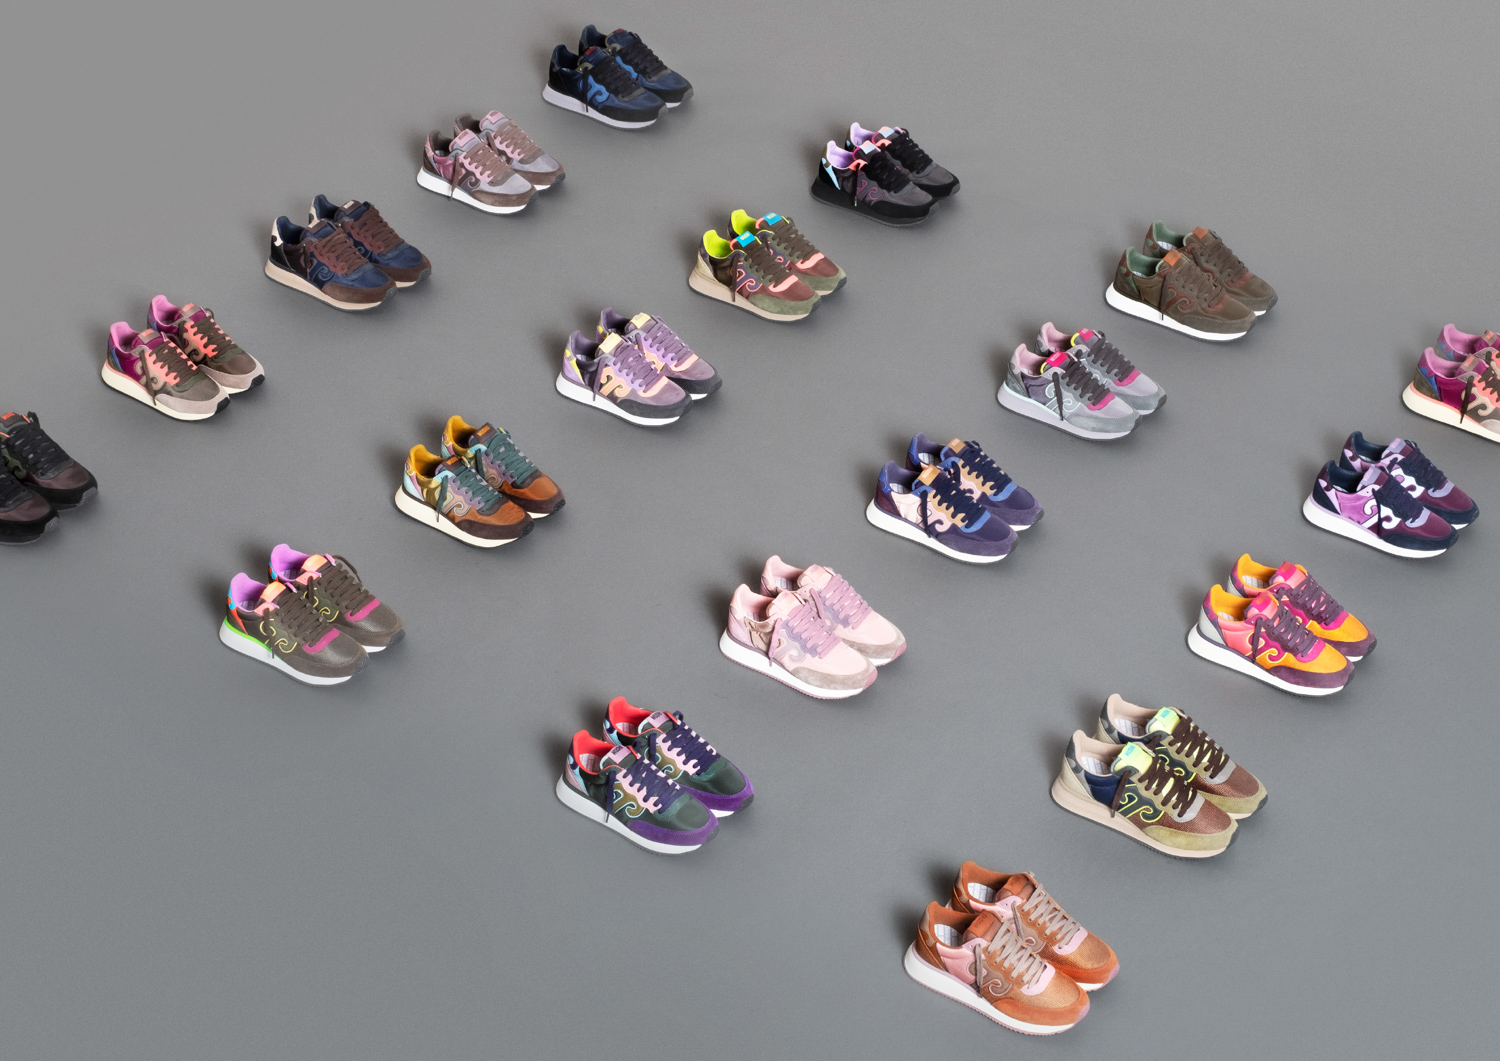 4. Scarpe Wushu Ruyi Master FW22 shoes collection 2022 image